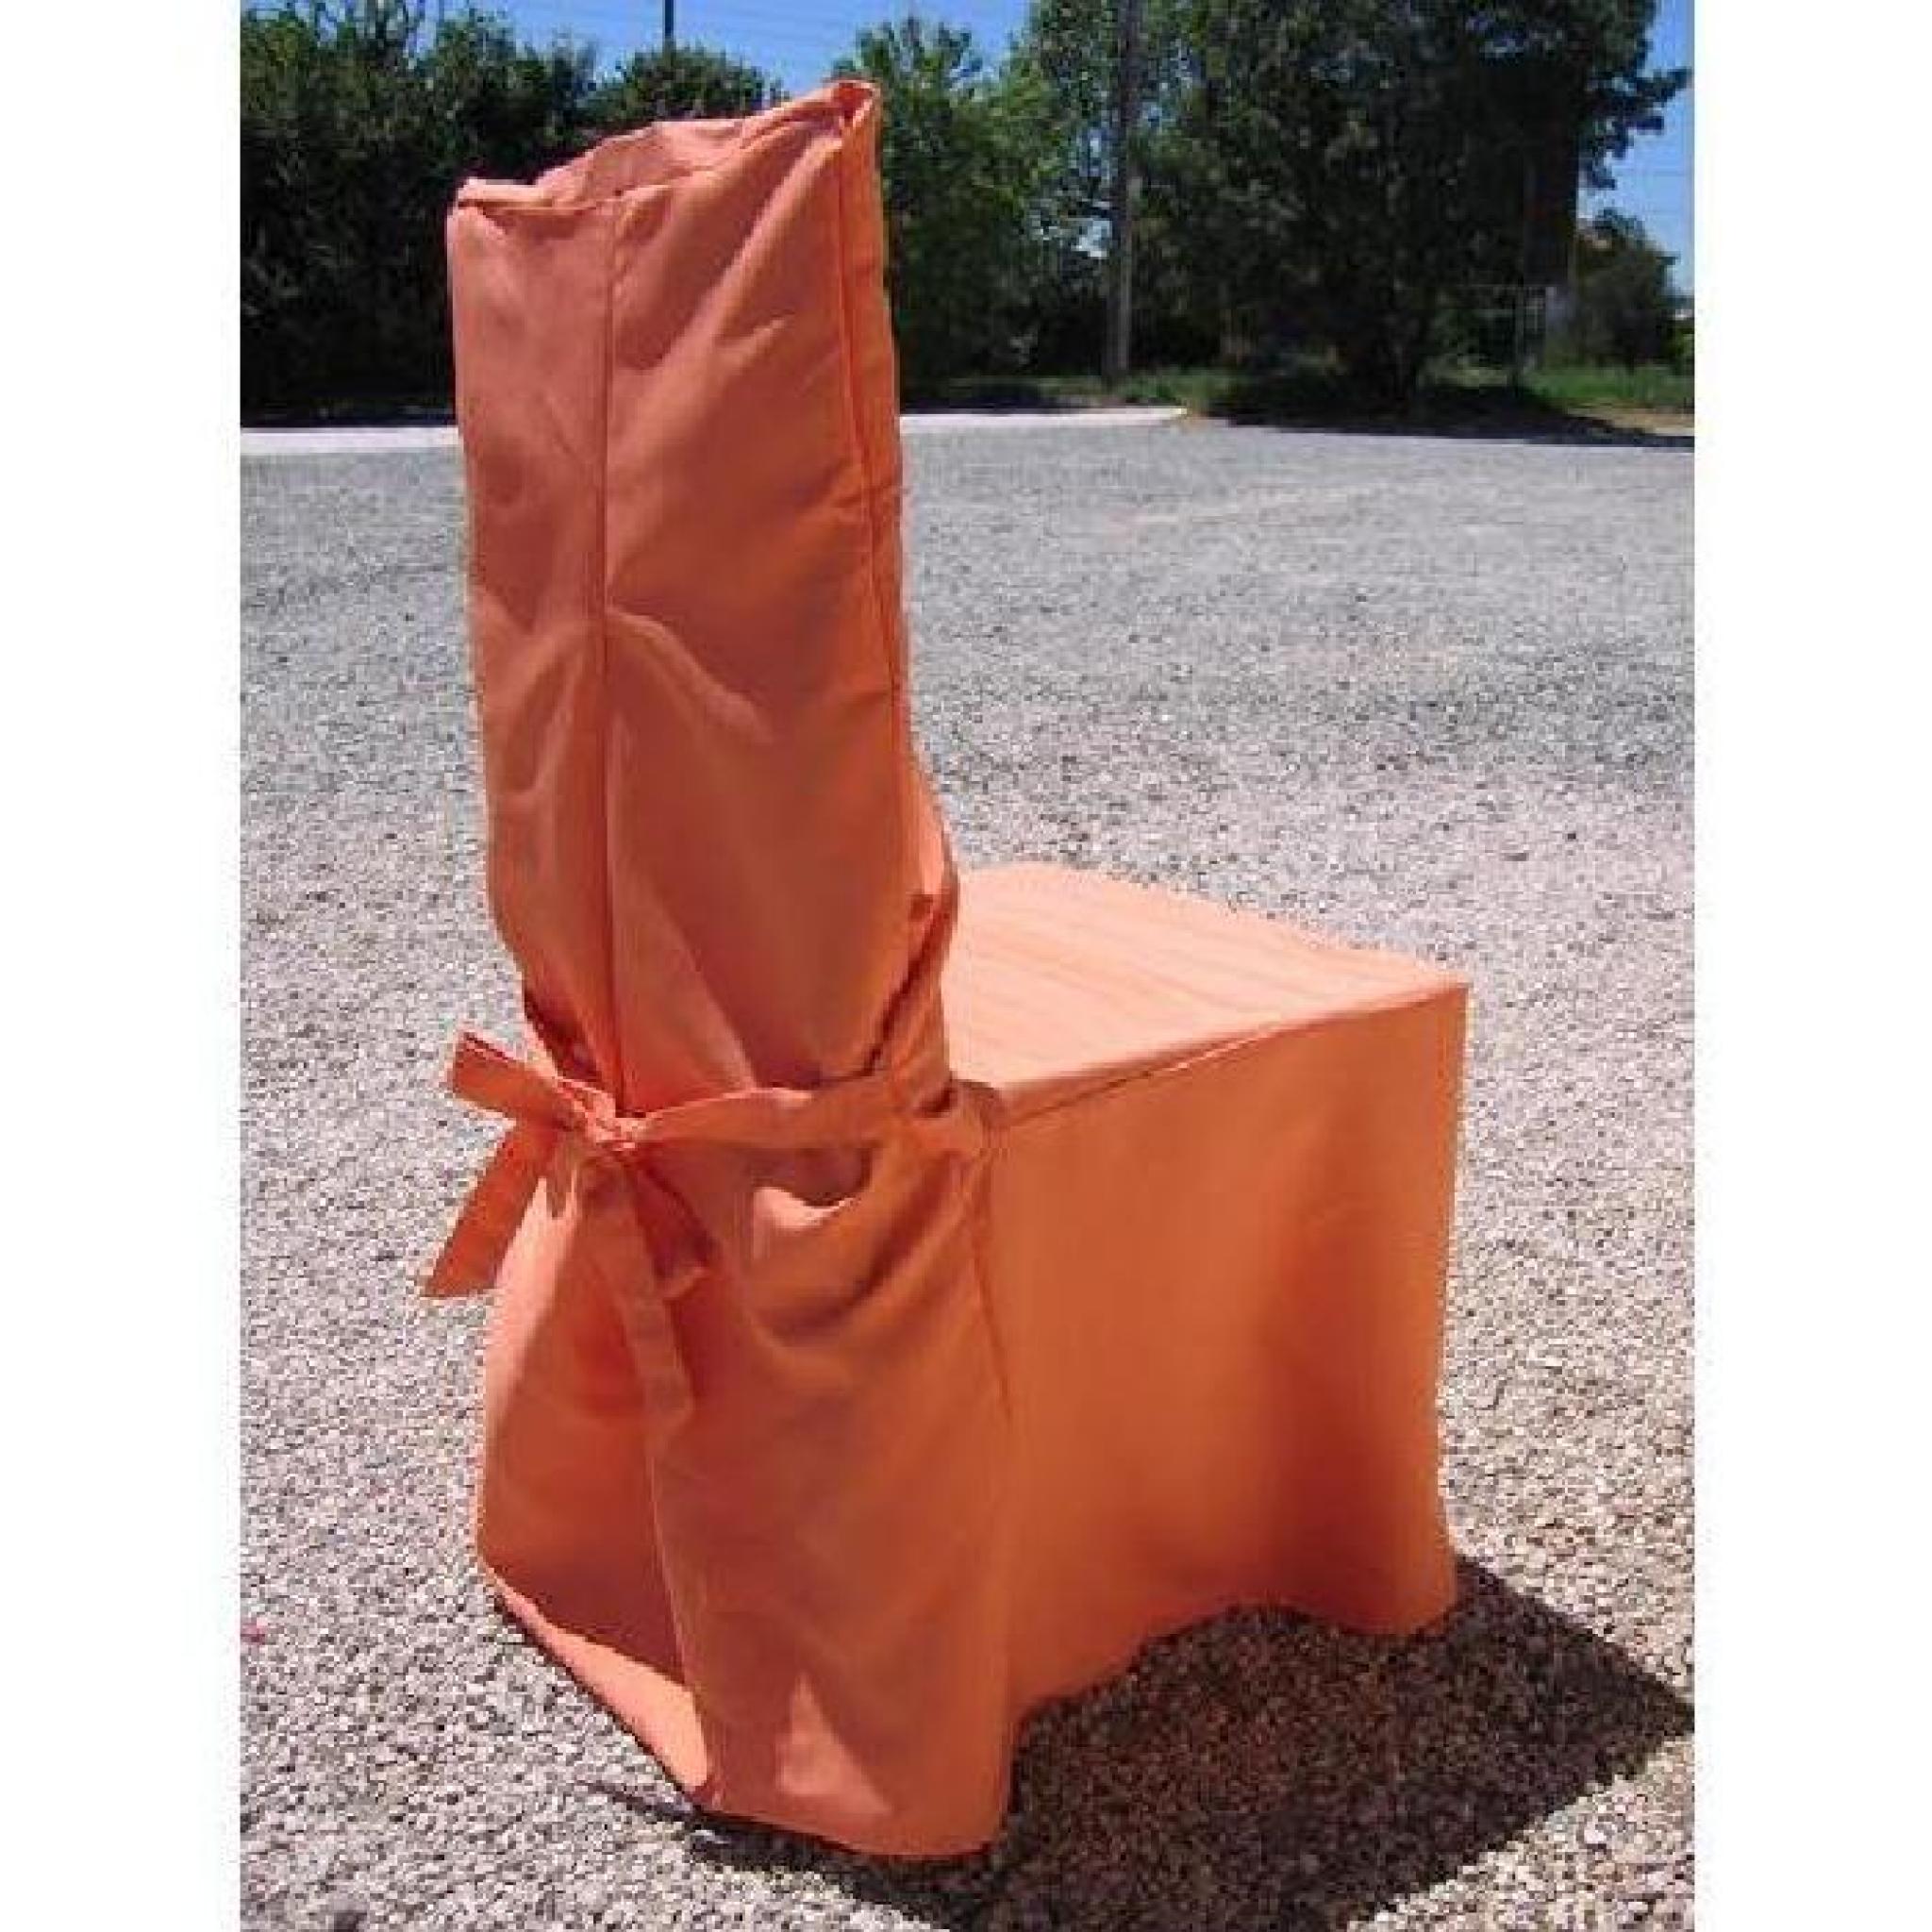 1 housse de chaise orange pas cher